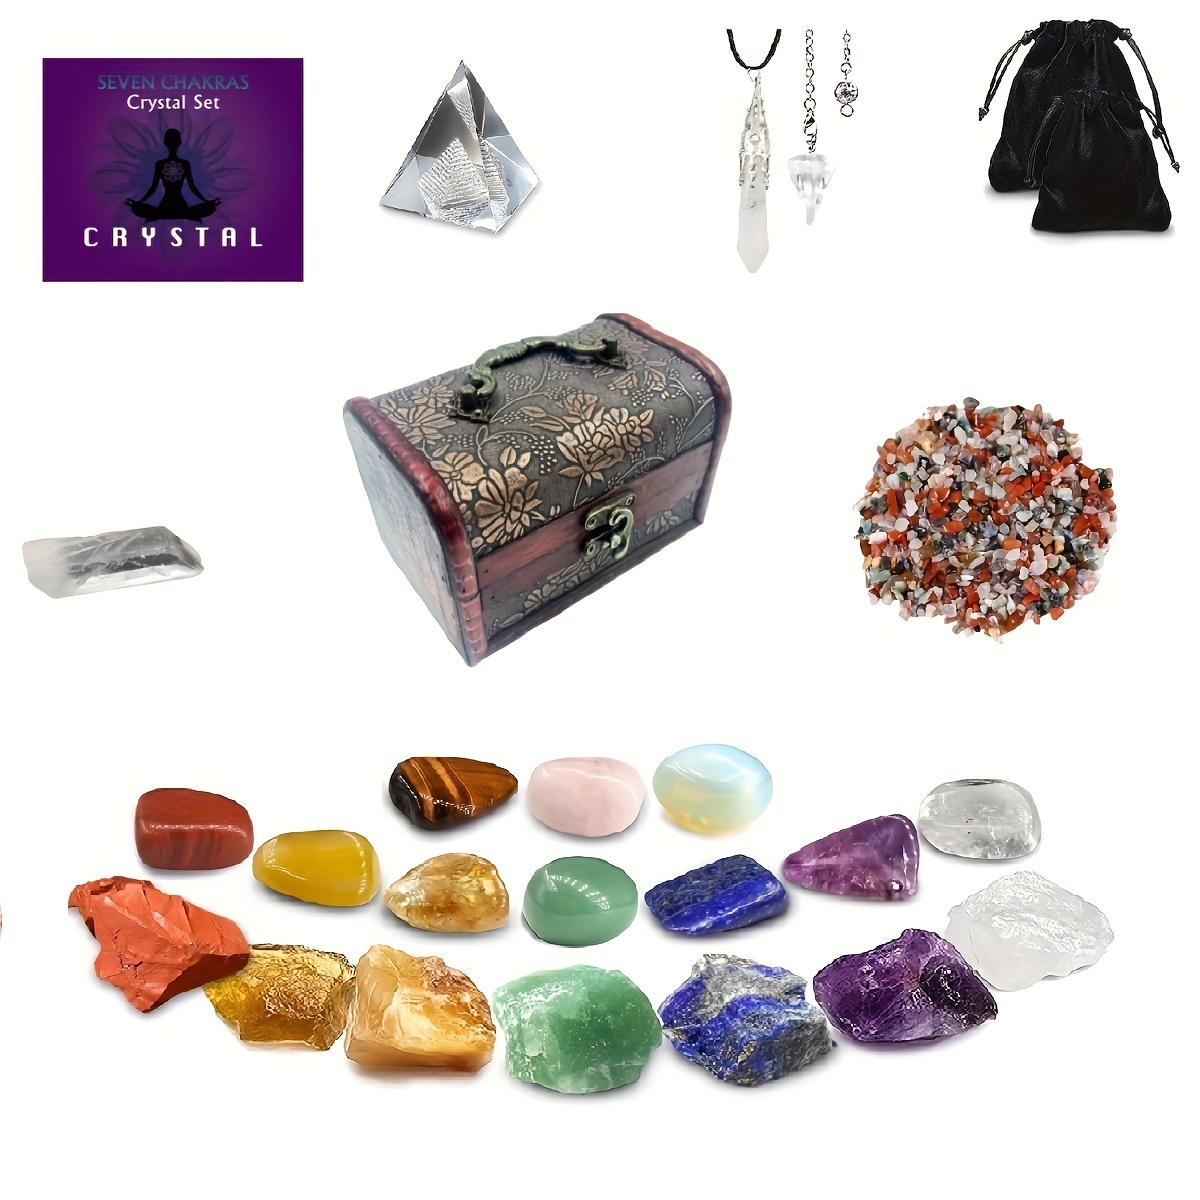 healing crystals chakras